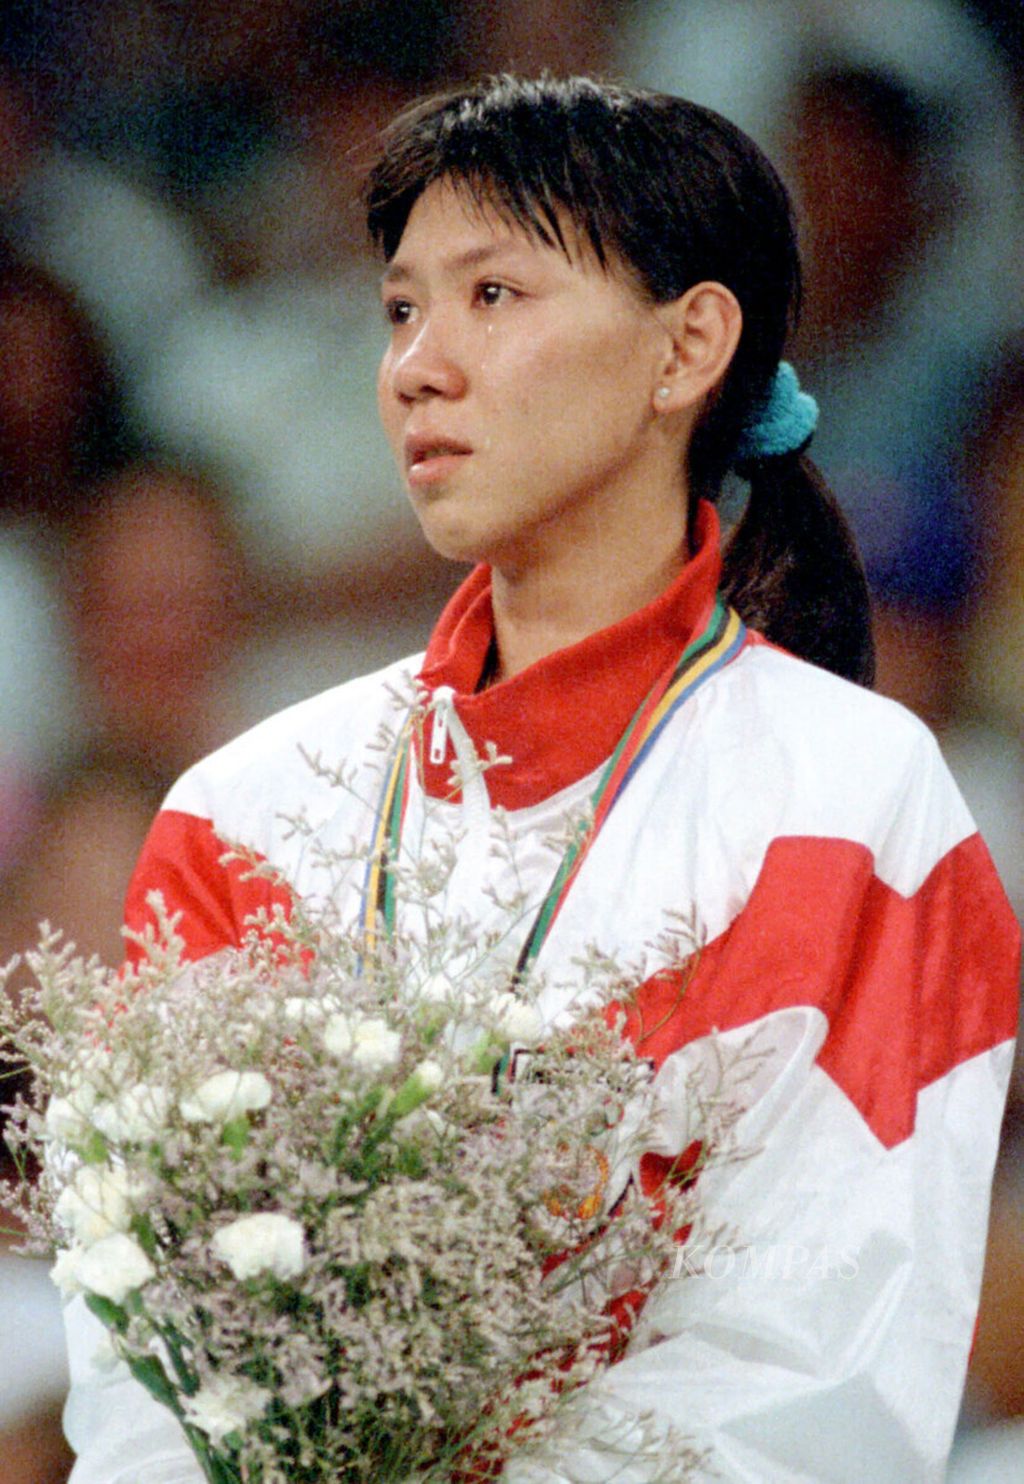 Pebulu tangkis Susi Susanti pada acara penghormatan menerima medali emas Olimpiade pertama untuk Indonesia, 4 Agustus 1992 di Barcelona, Spanyol.